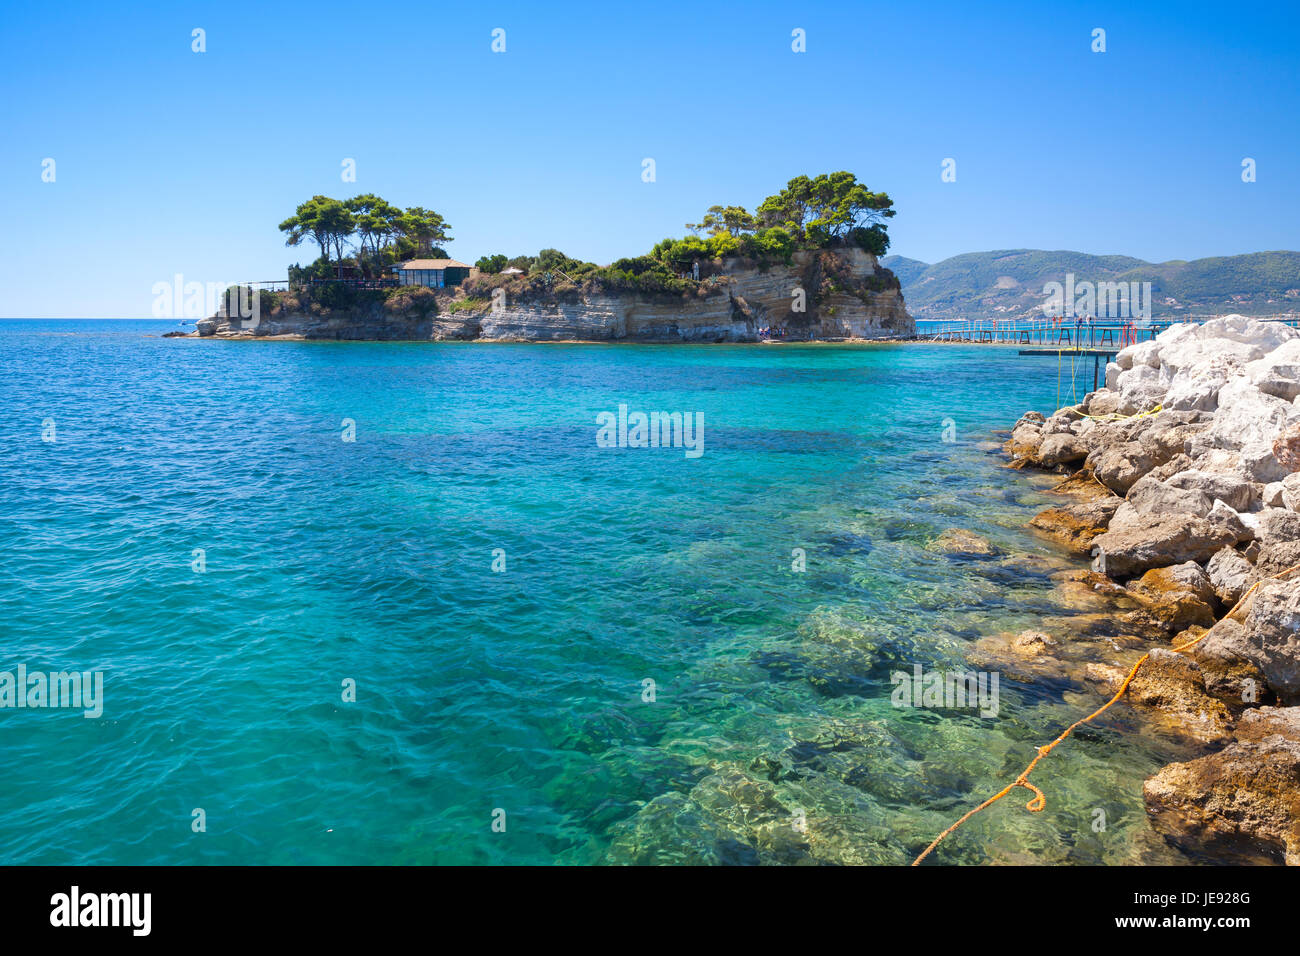 Isla de cameo. La isla de Zakynthos, Grecia. Destino turístico muy popular para las vacaciones de verano Foto de stock